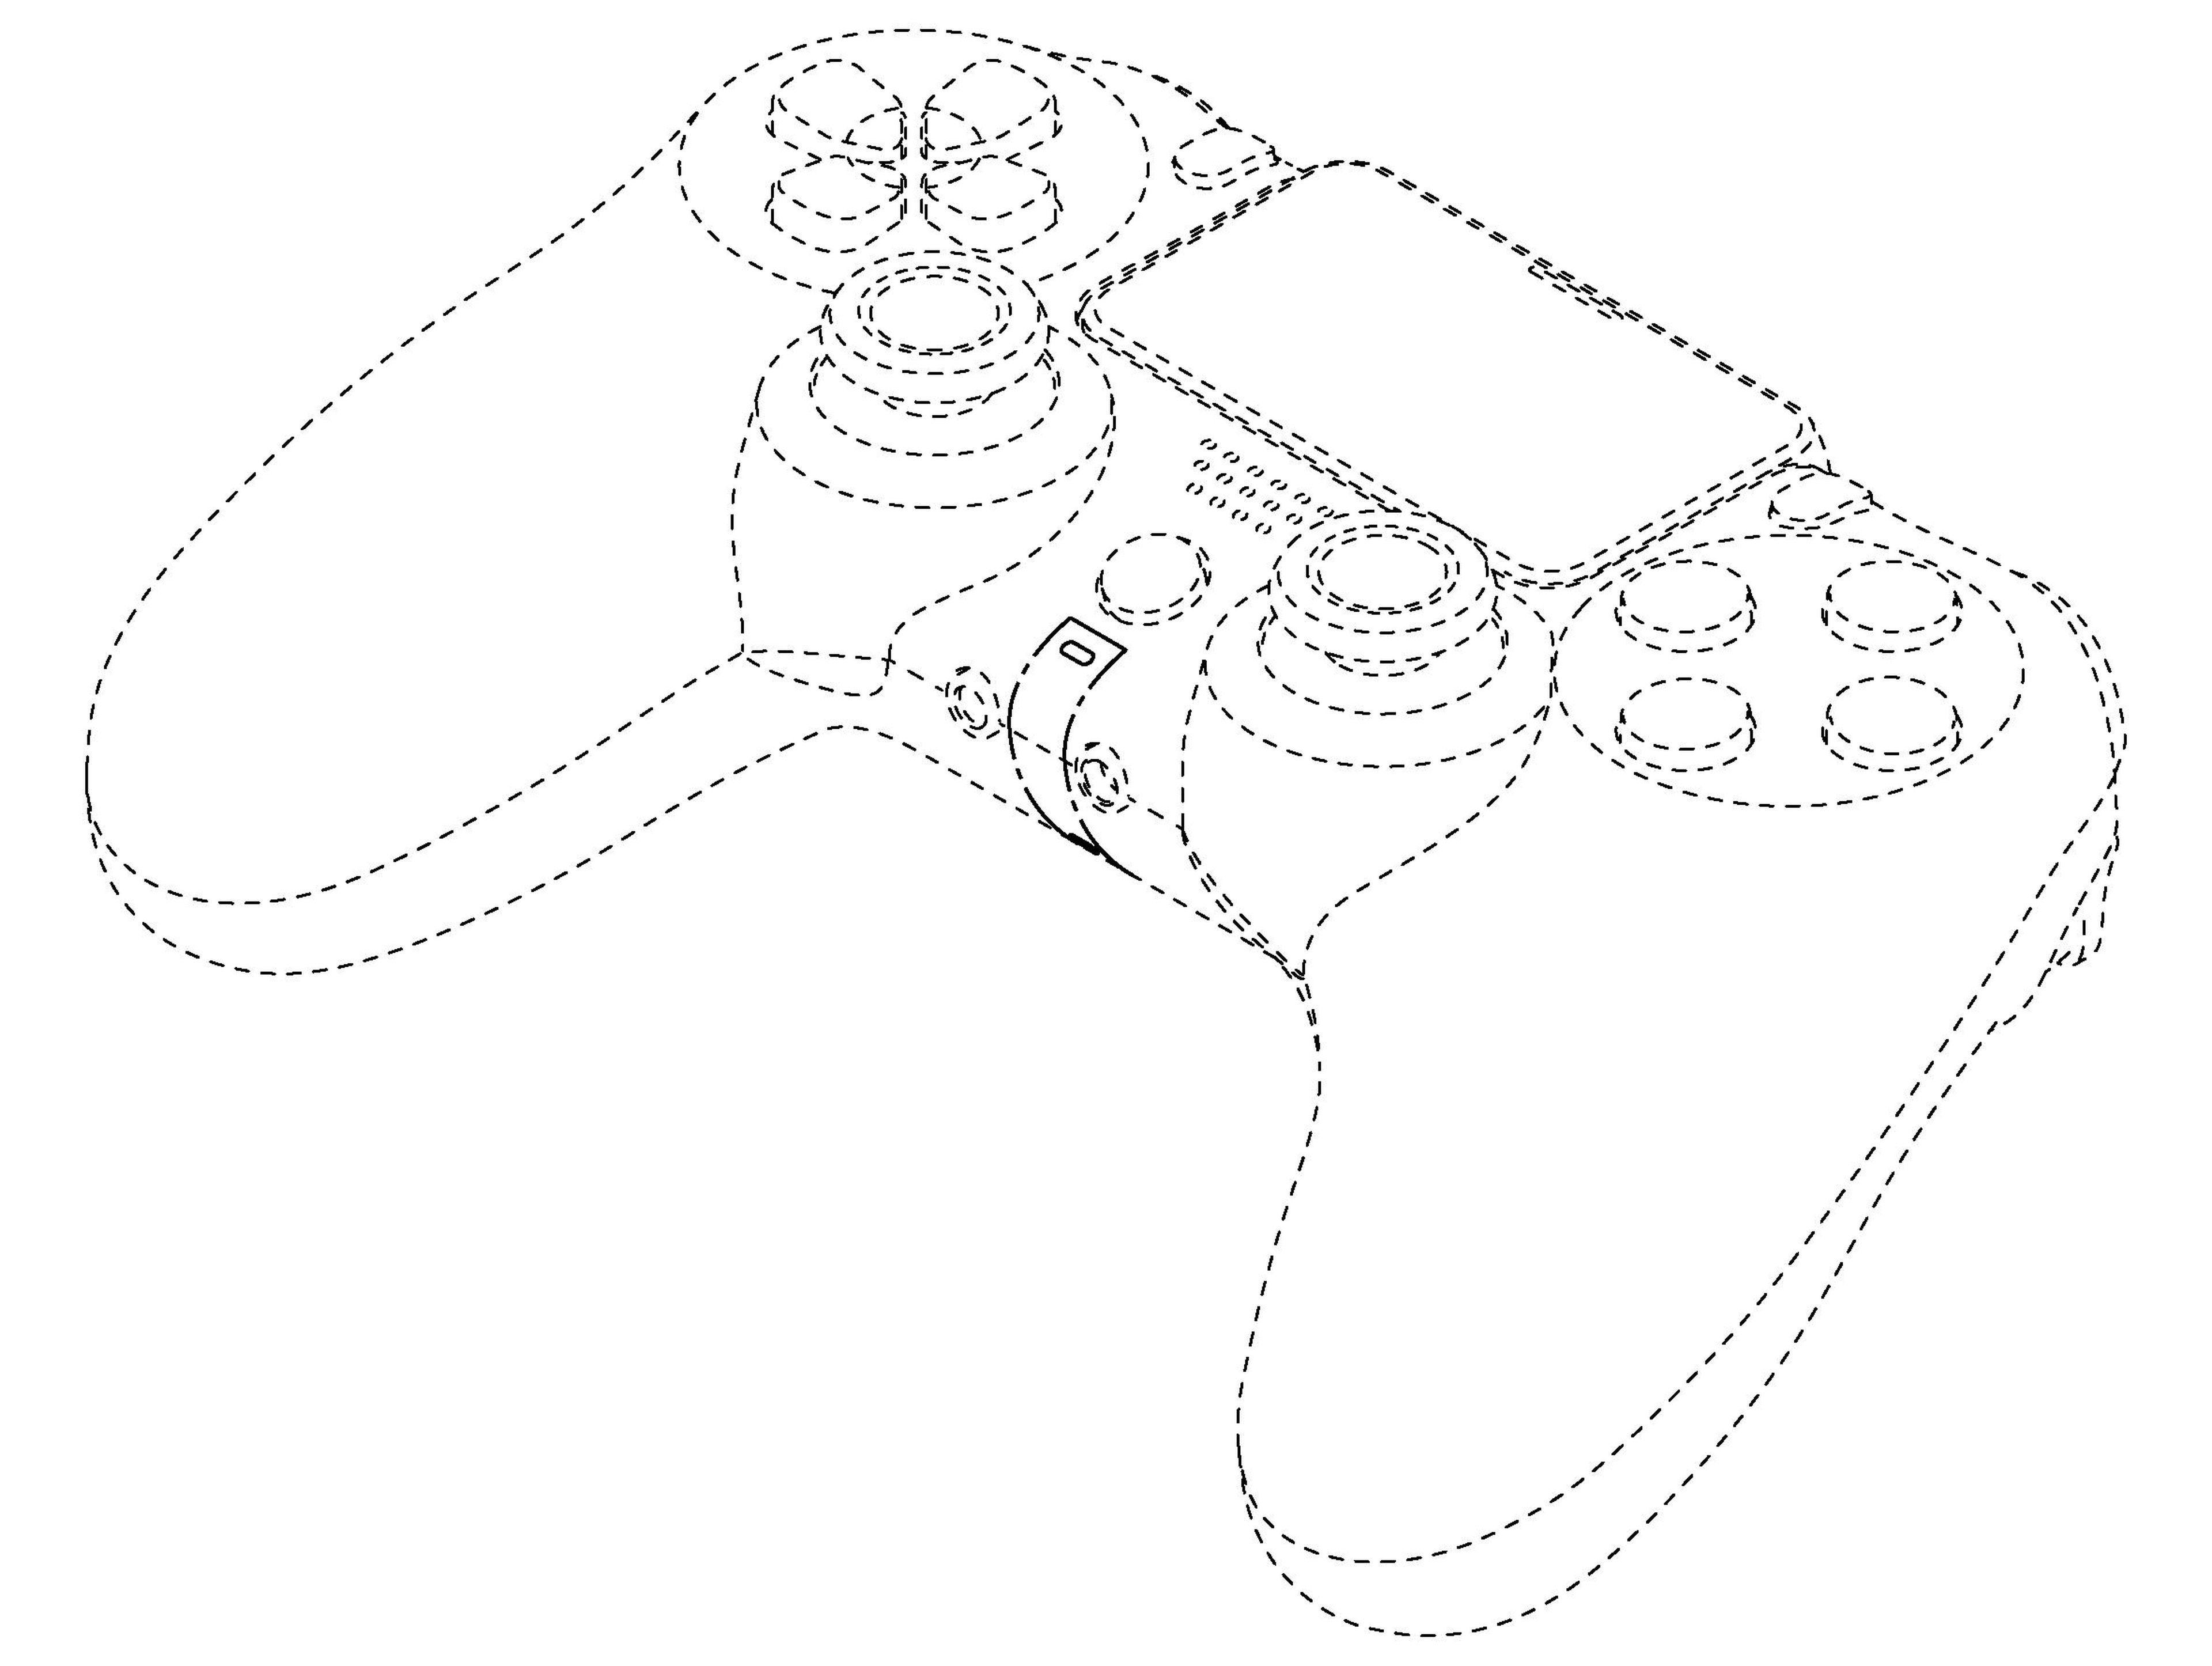 Prototipo del mando de PlayStation 4